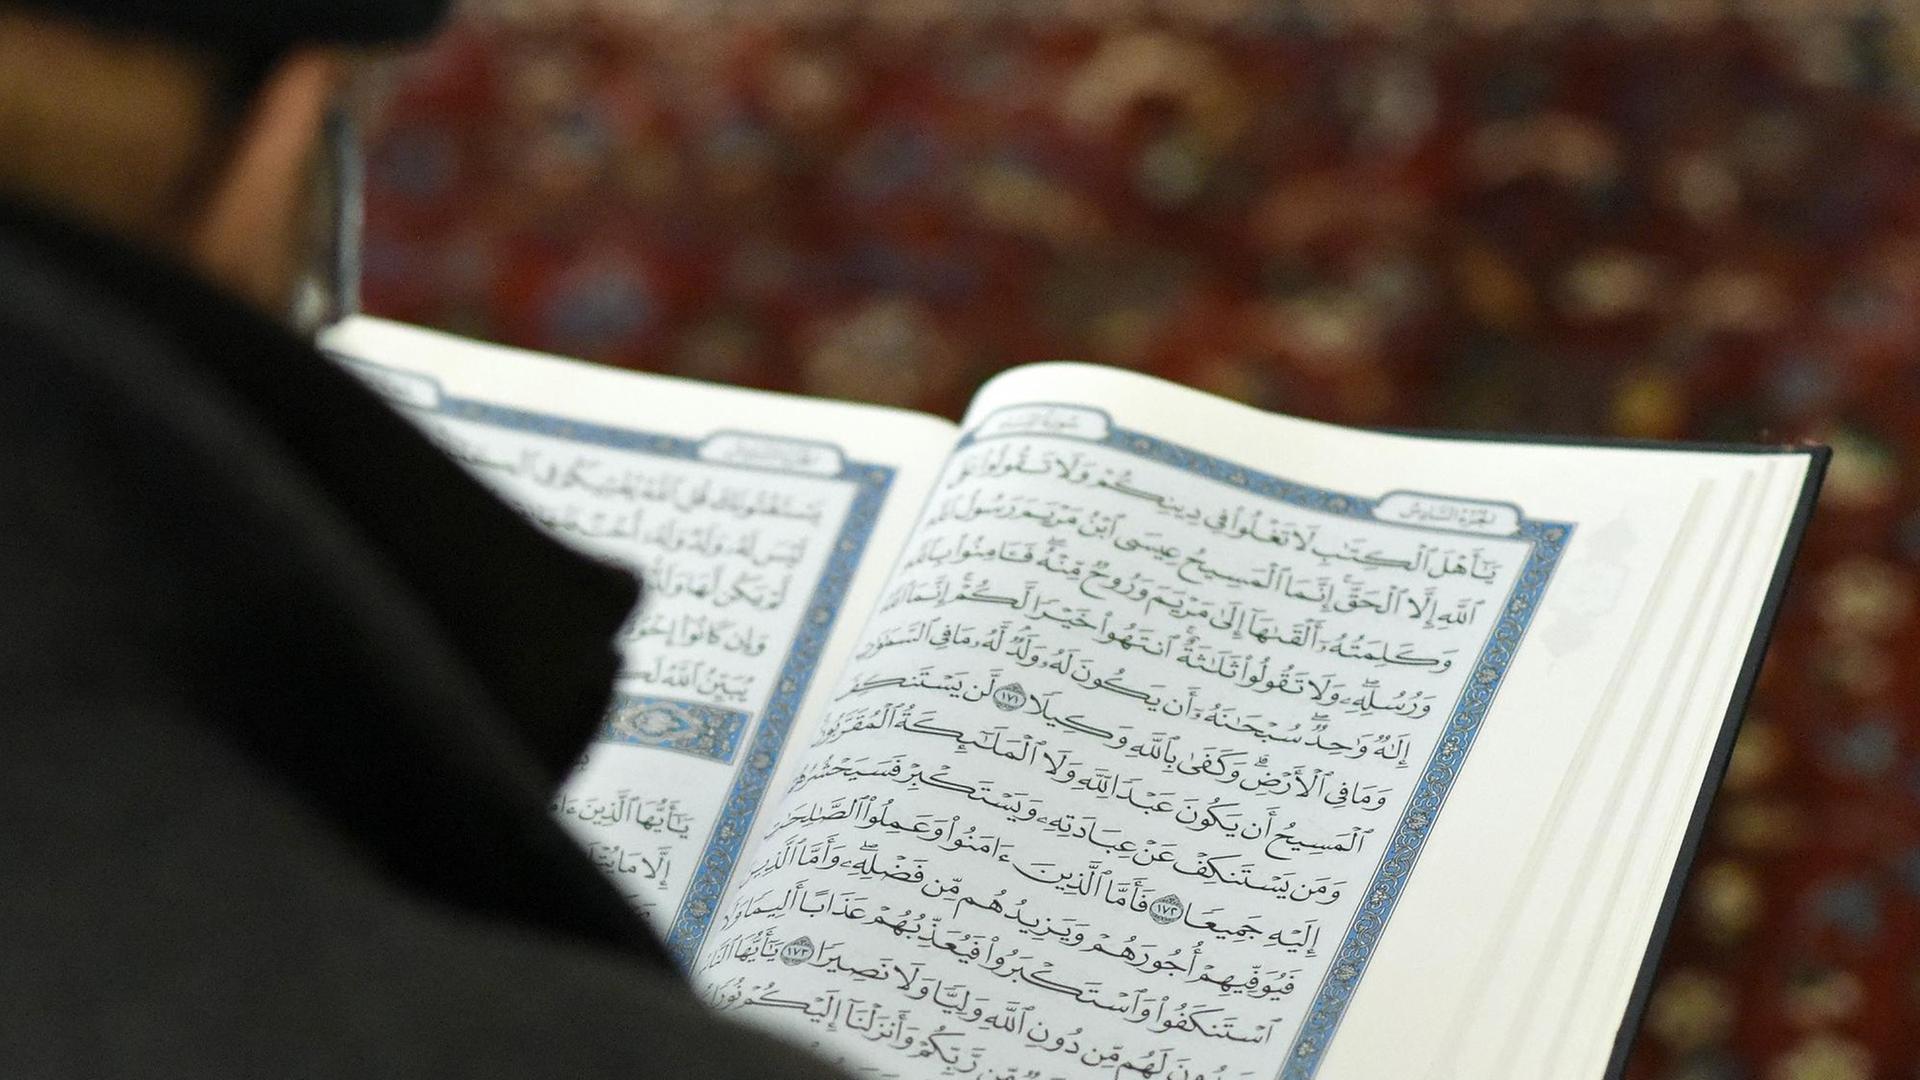 Ein Besucher des Islamischen Zentrums Wien liest den Koran aufgenommen am 25.10.2014 anlässlich des "Tages der offenen Moschee" in Wien.